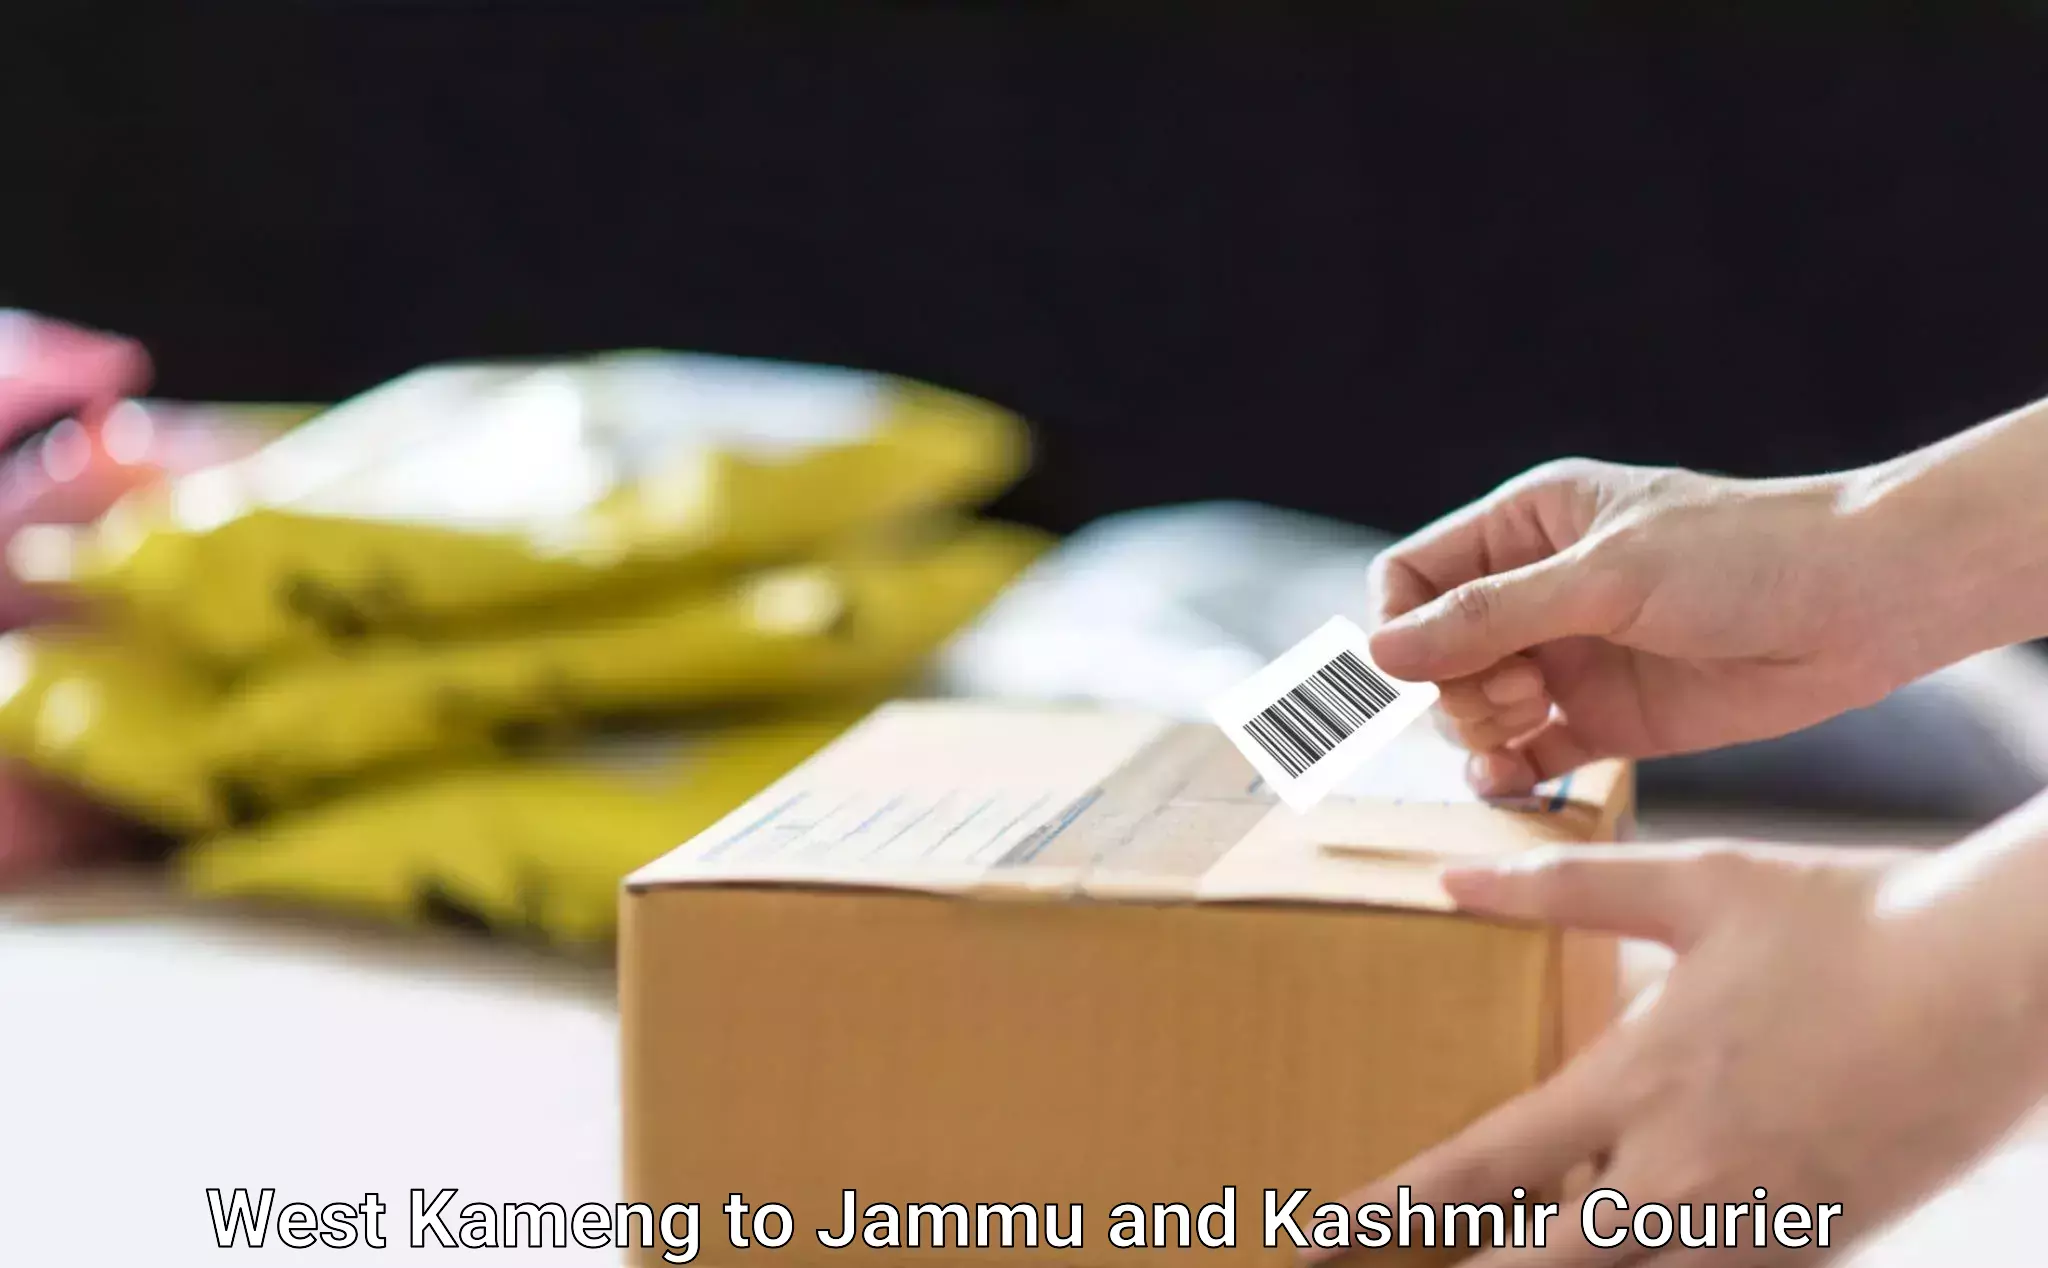 Ocean freight courier West Kameng to Jammu